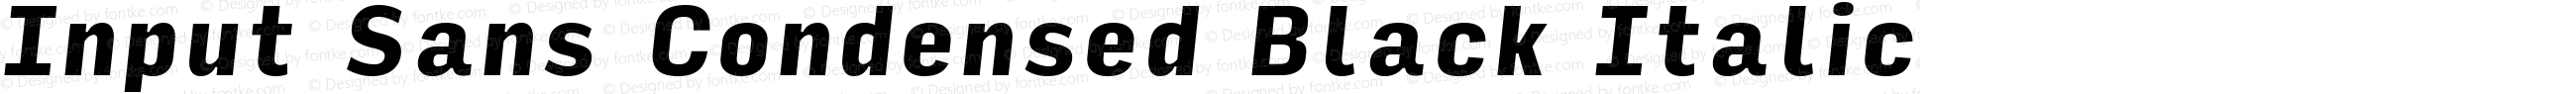 Input Sans Condensed Black Italic